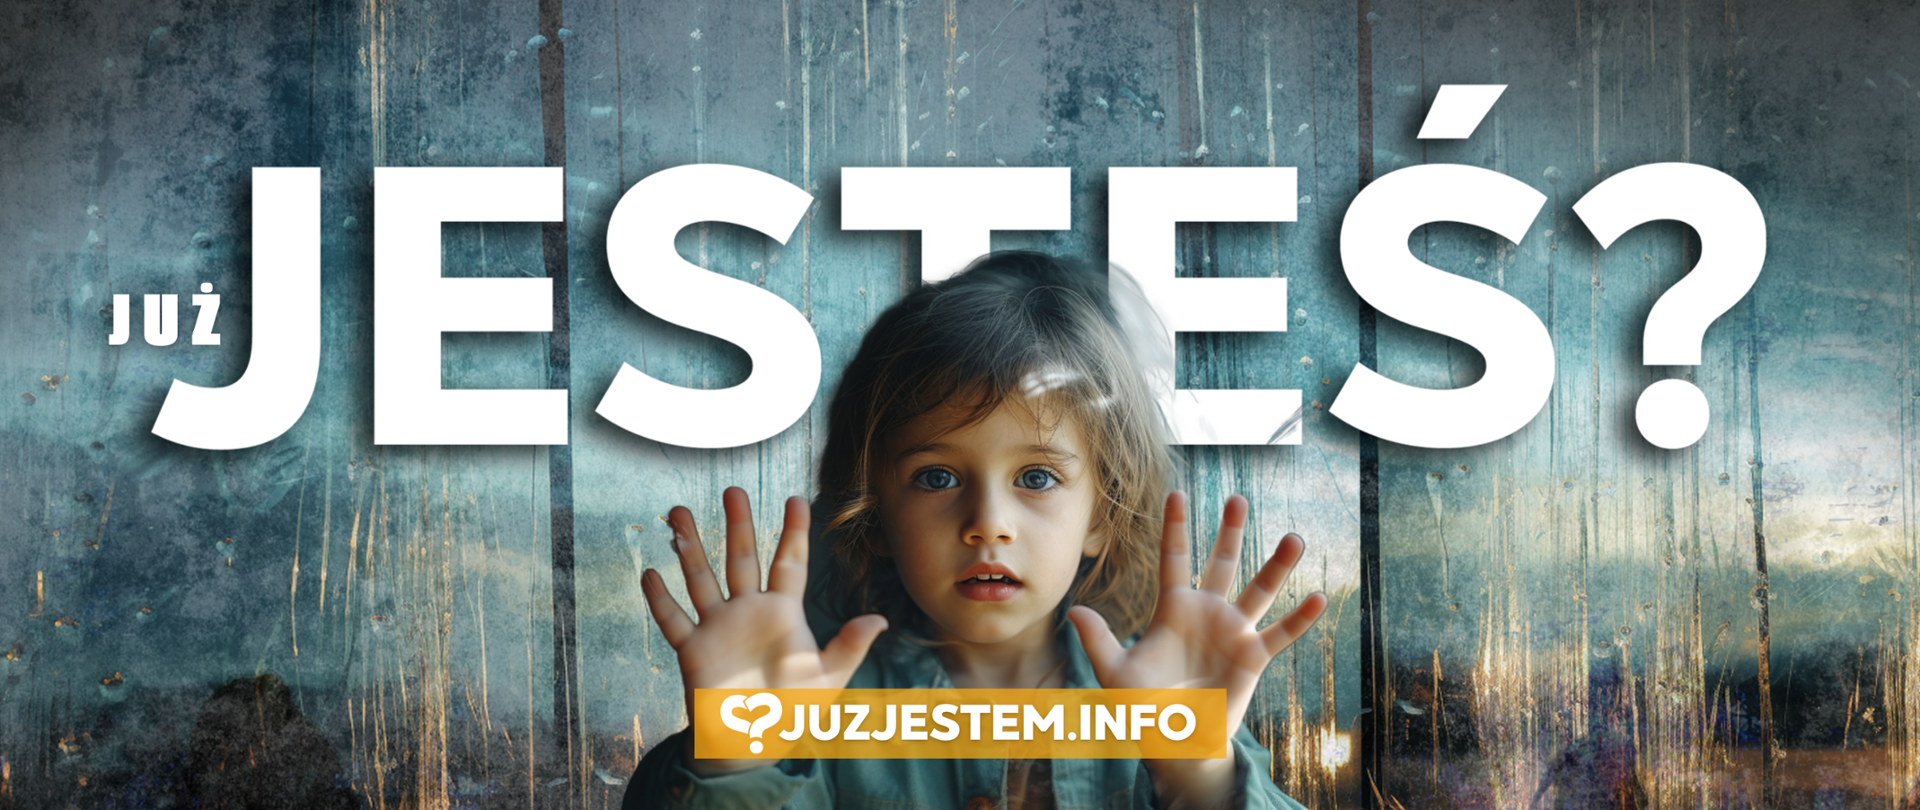 Już jesteś? Pierwsza ogólnopolska kampania promująca rodzicielstwo zastępcze w Polsce